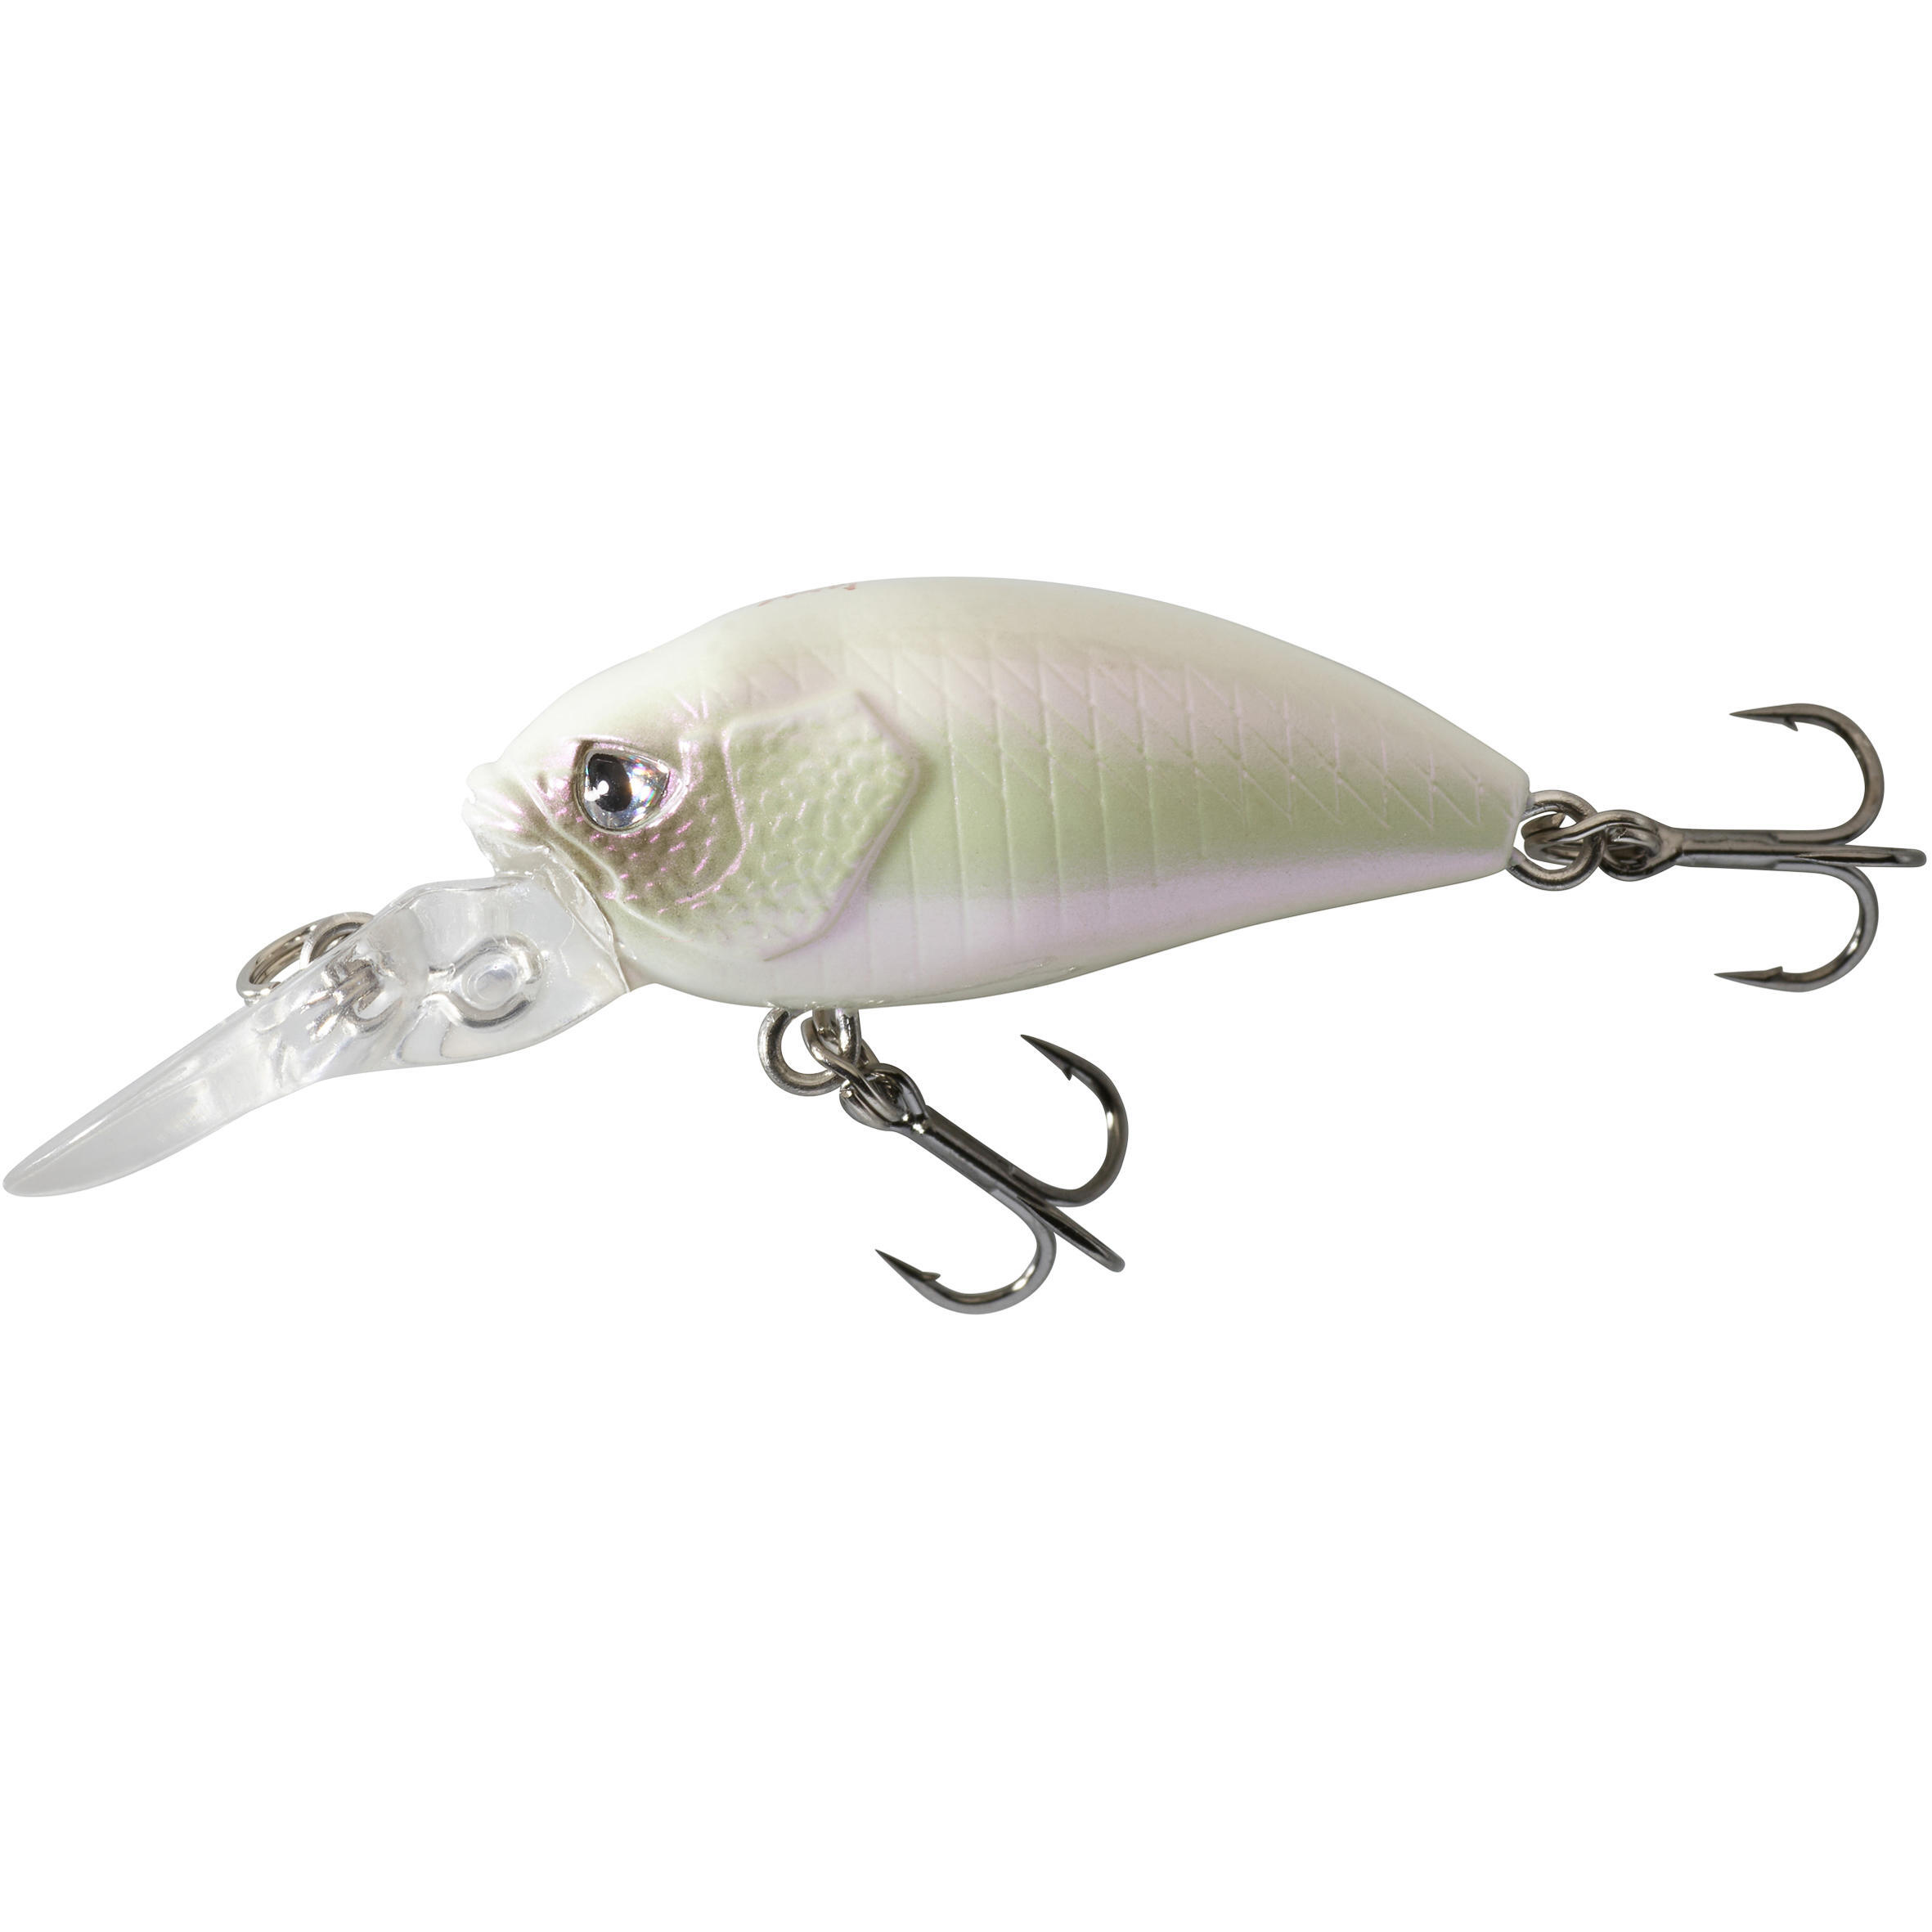 Воблер Crankbait WXM CRK 30 F белый CAPERLAN, белый приманка для рыбной ловли приманка для медленного зажима твердая искусственная бионическая приманка 30 г 40 г 60 г приманка для джиггинга